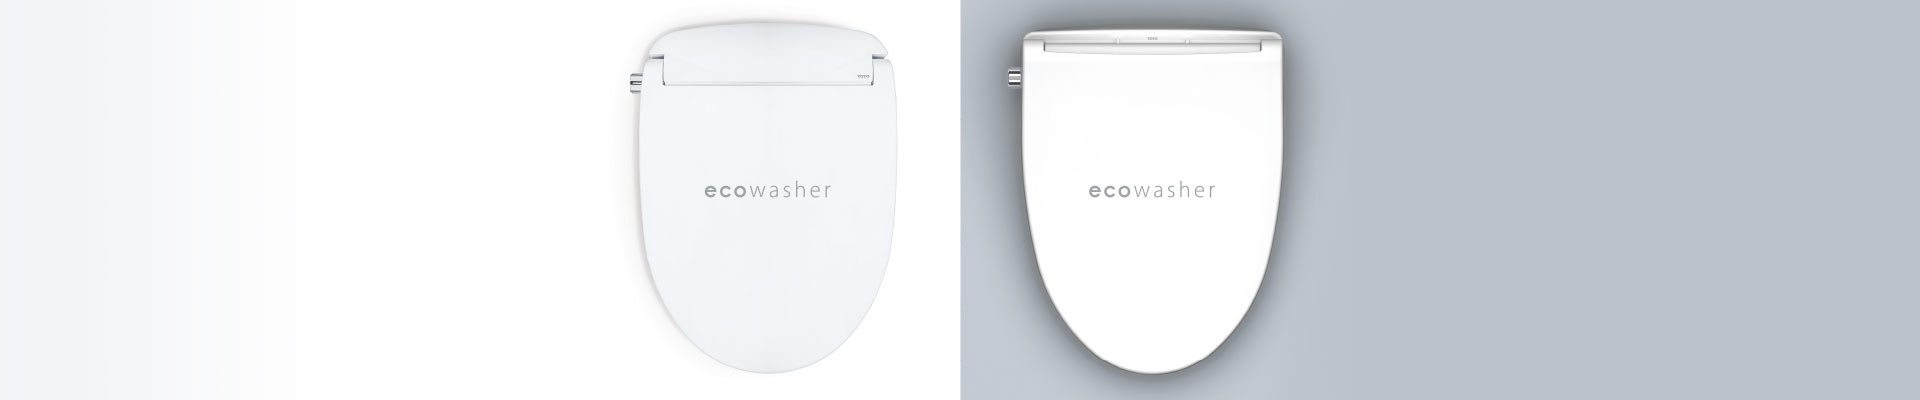 Eco Washer